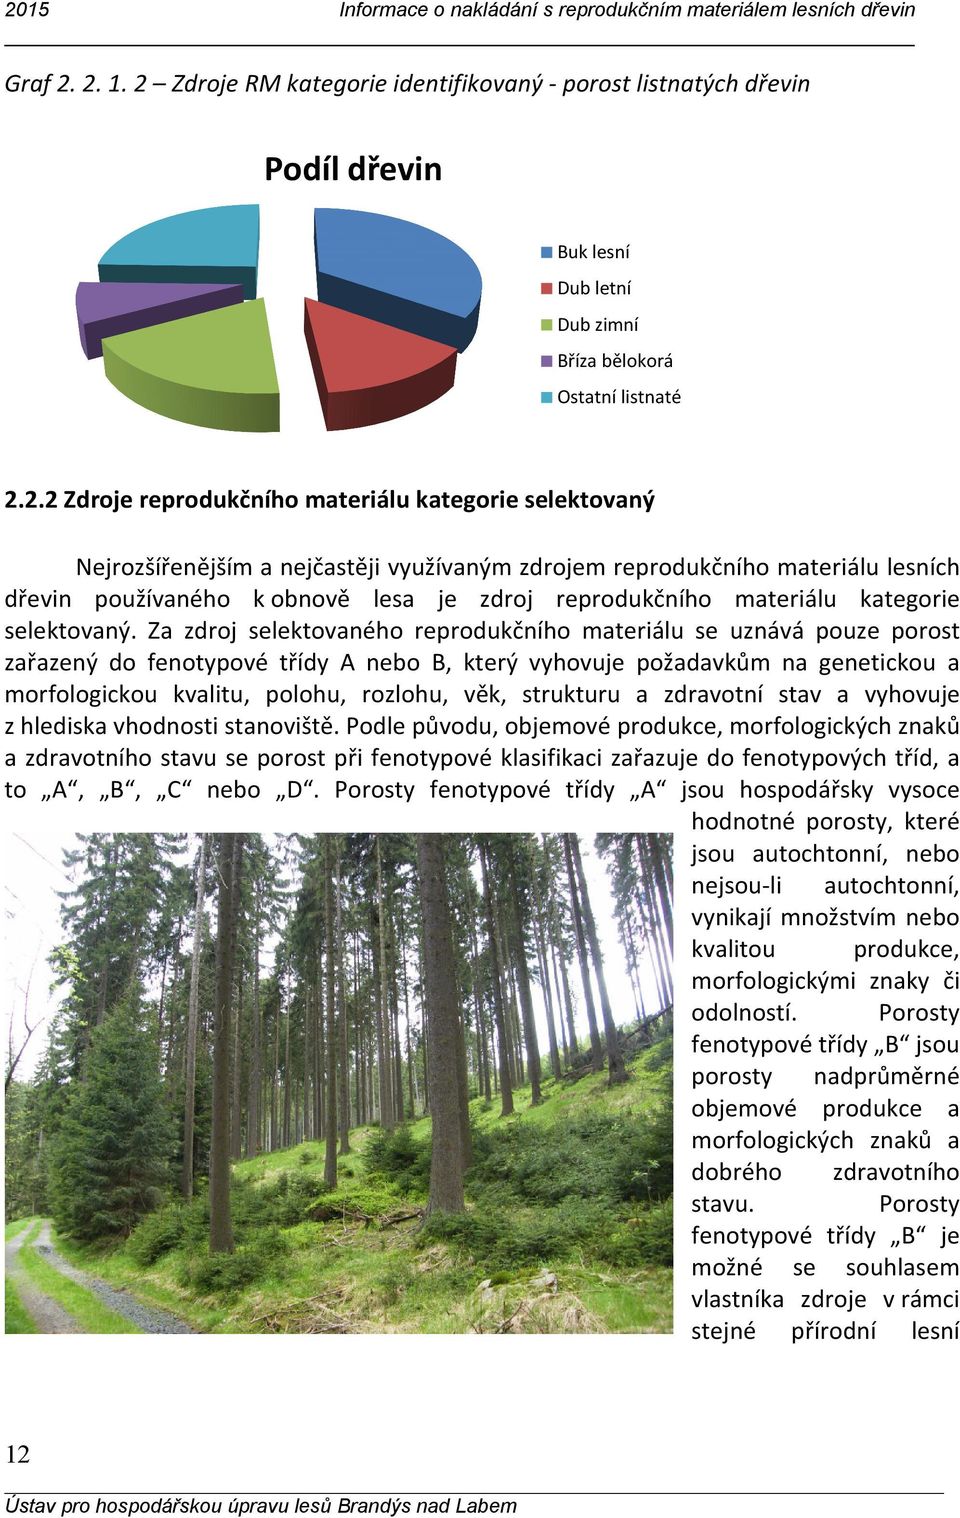 Nejrozšířenějším a nejčastěji využívaným zdrojem reprodukčního materiálu lesních dřevin používaného k obnově lesa je zdroj reprodukčního materiálu kategorie selektovaný.